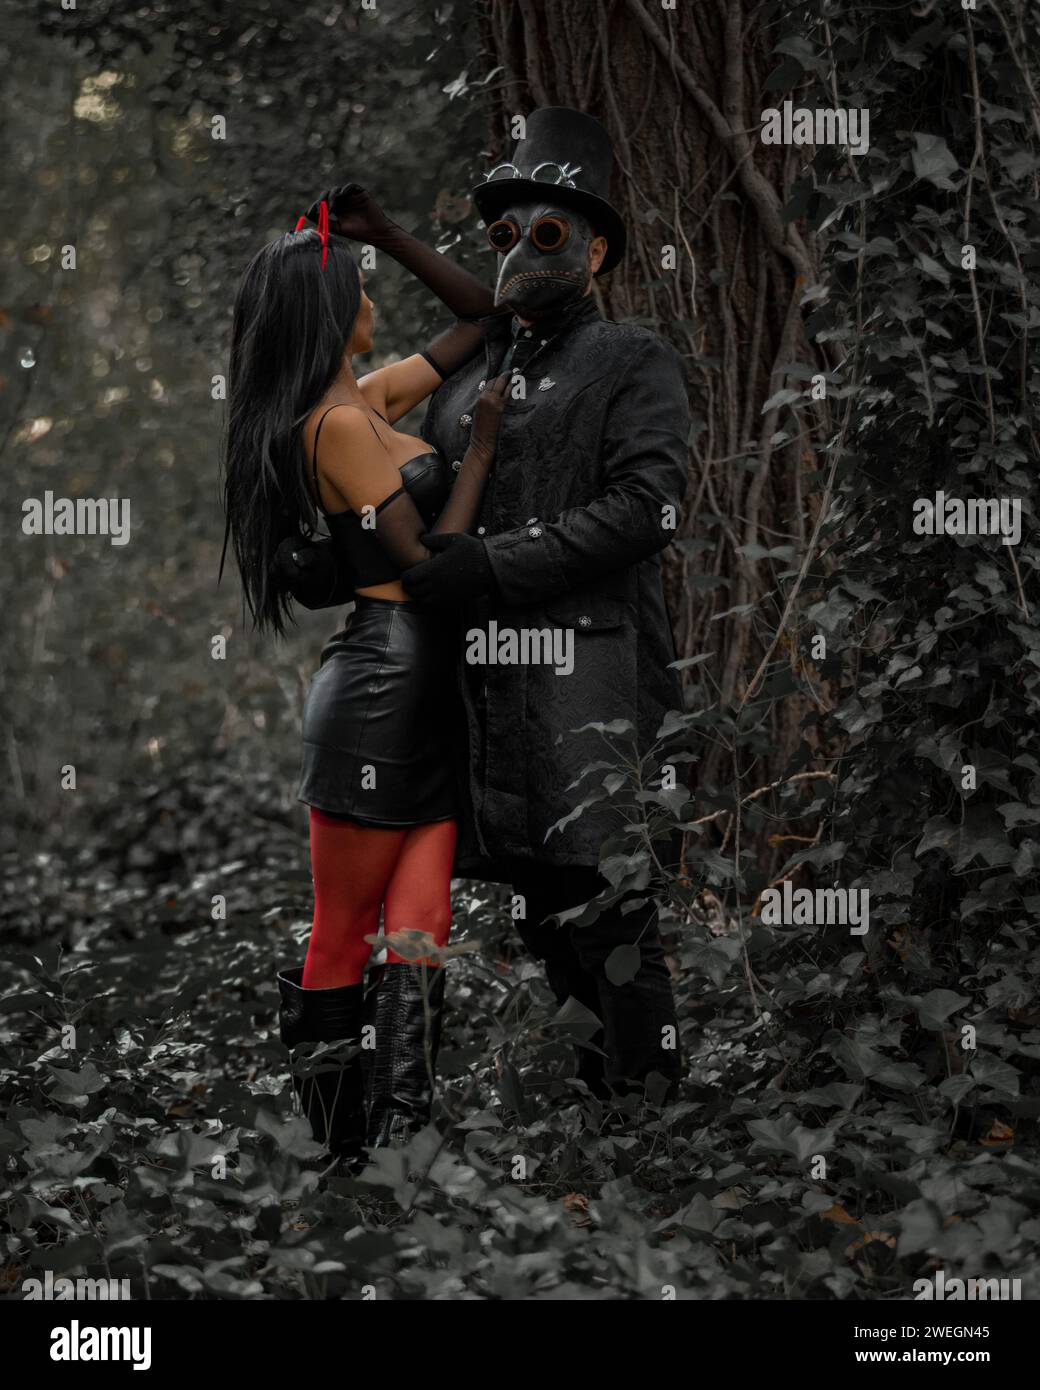 Un homme dans un chapeau haut de forme et un masque debout aux côtés d'une femme élégante avec des cornes de diable dans une forêt Banque D'Images